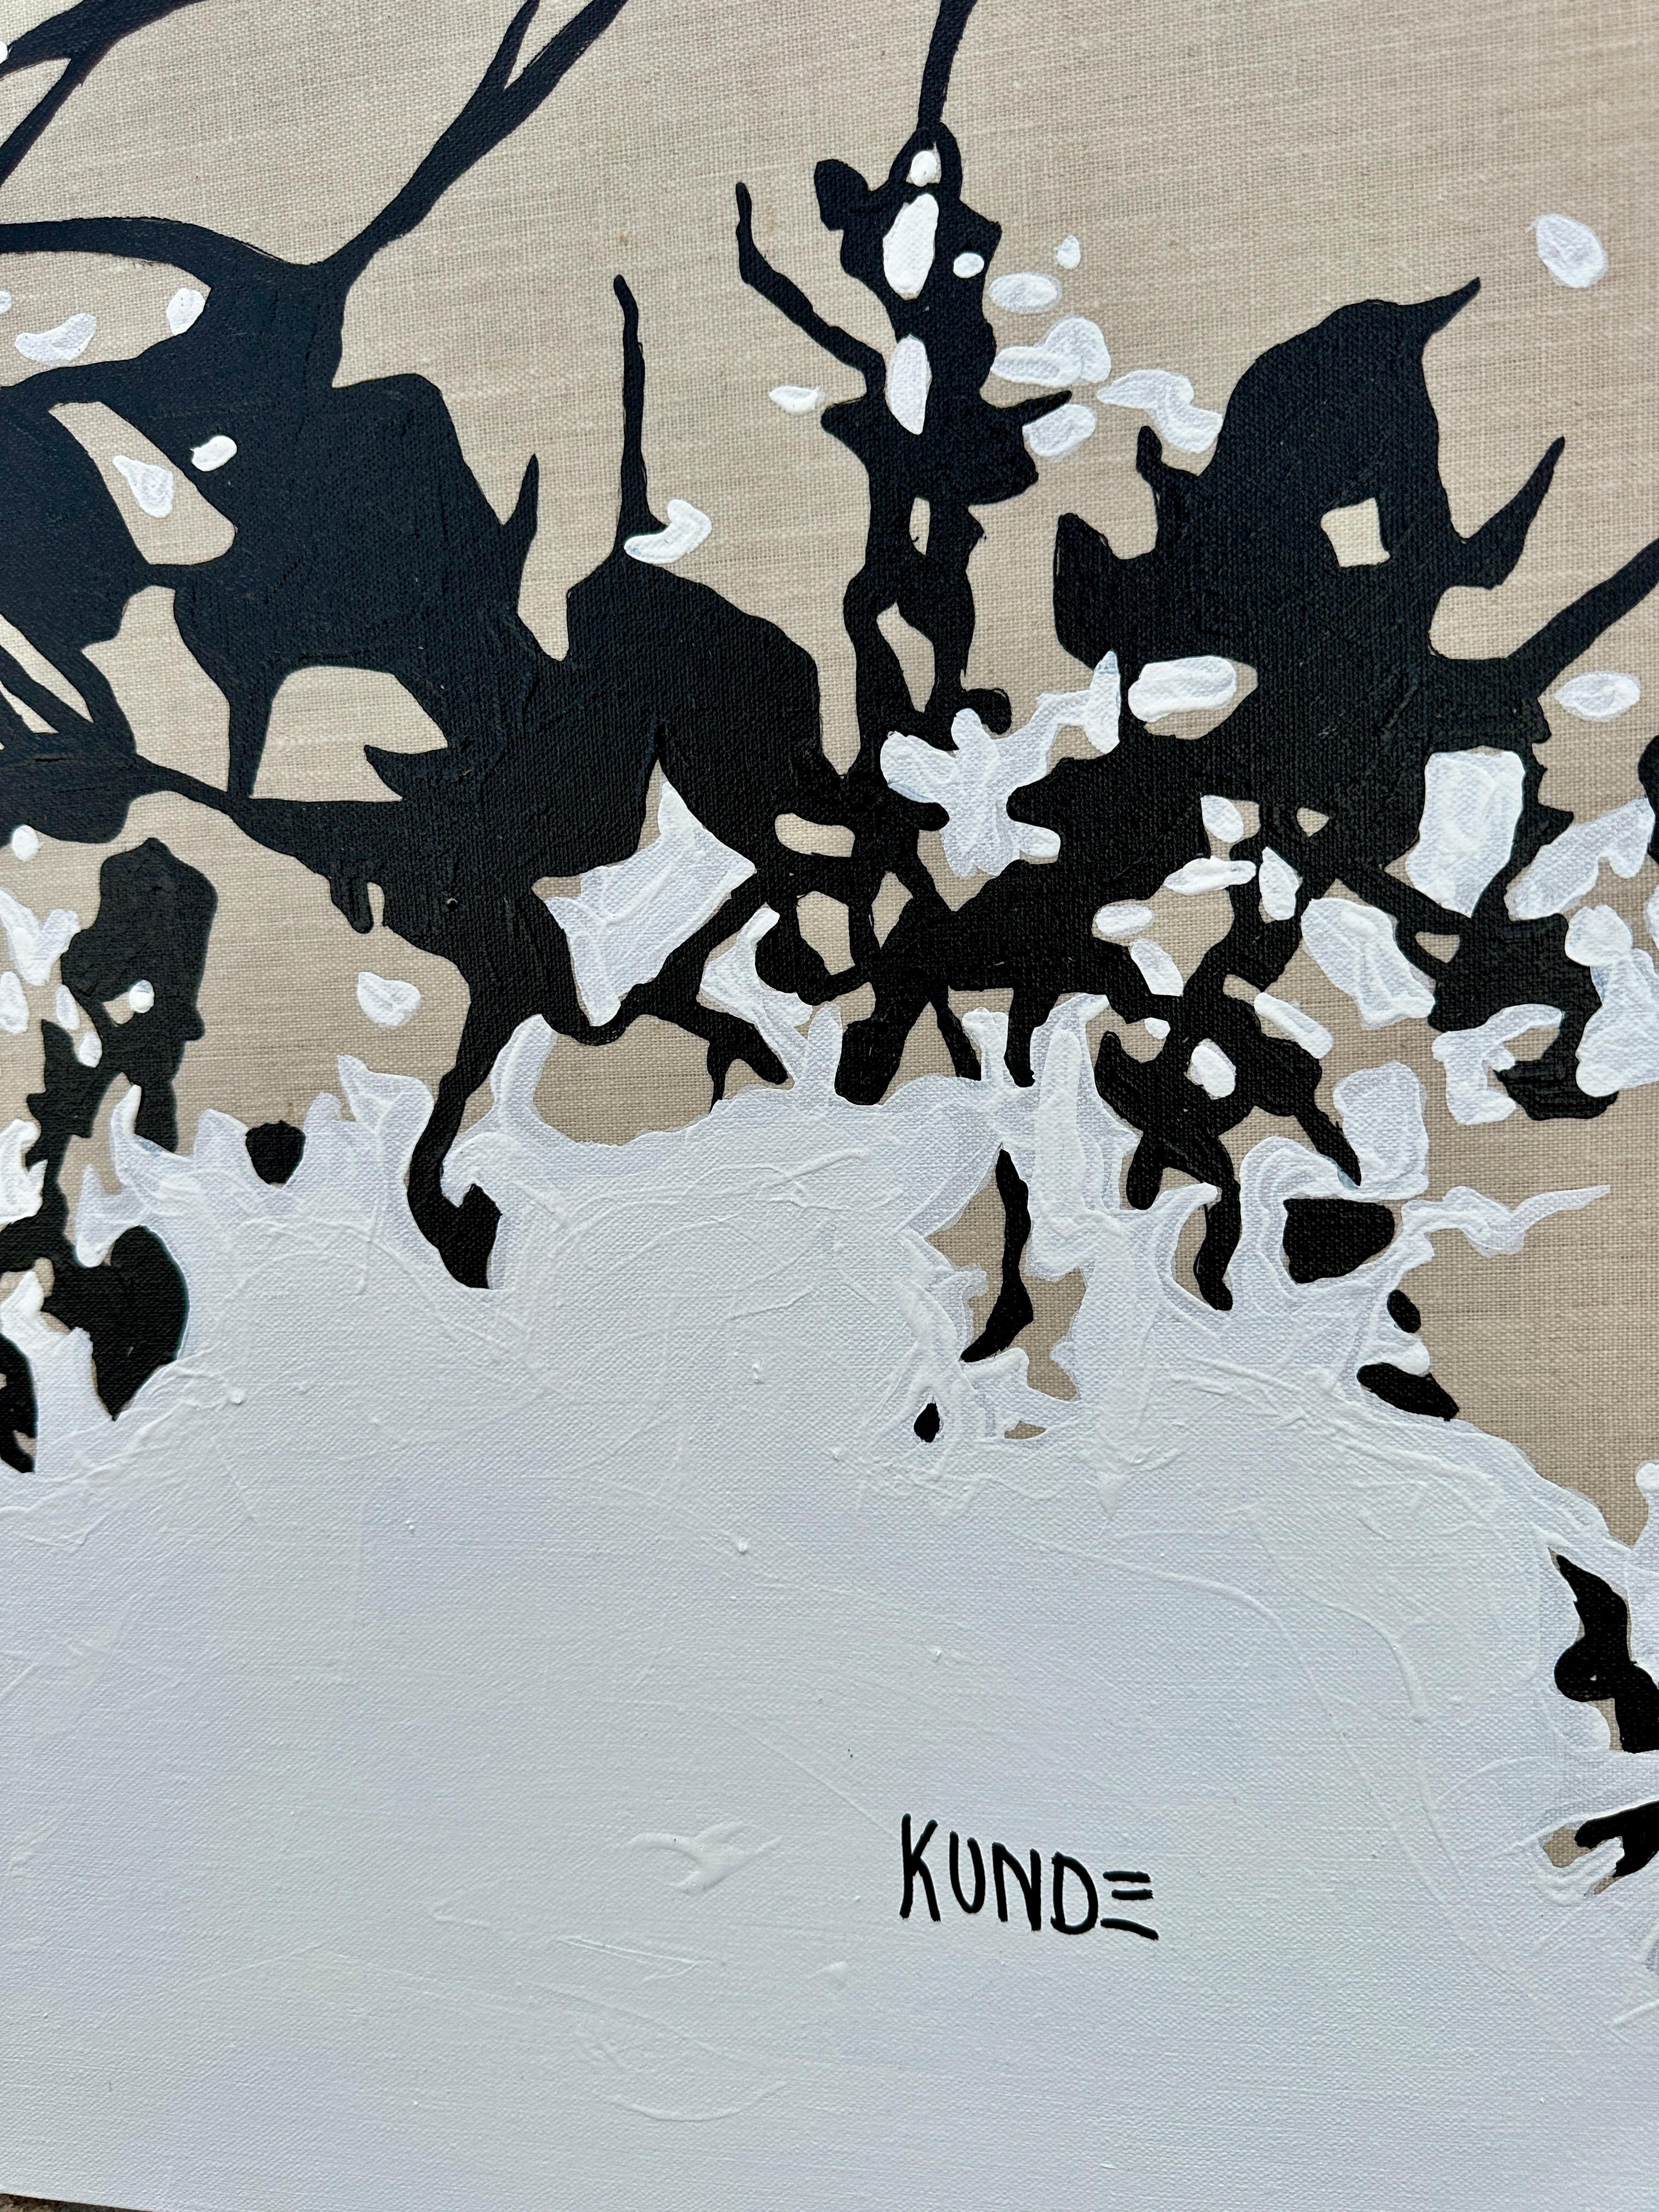  Ernesto Kunde, artiste brésilien-américain, peinture abstraite originale sur lin

Il s'agit d'une peinture acrylique abstraite originale sur toile de lin de l'artiste.  Artiste américano-brésilien Ernesto Kunde (né en 1973).  Ce grand tableau